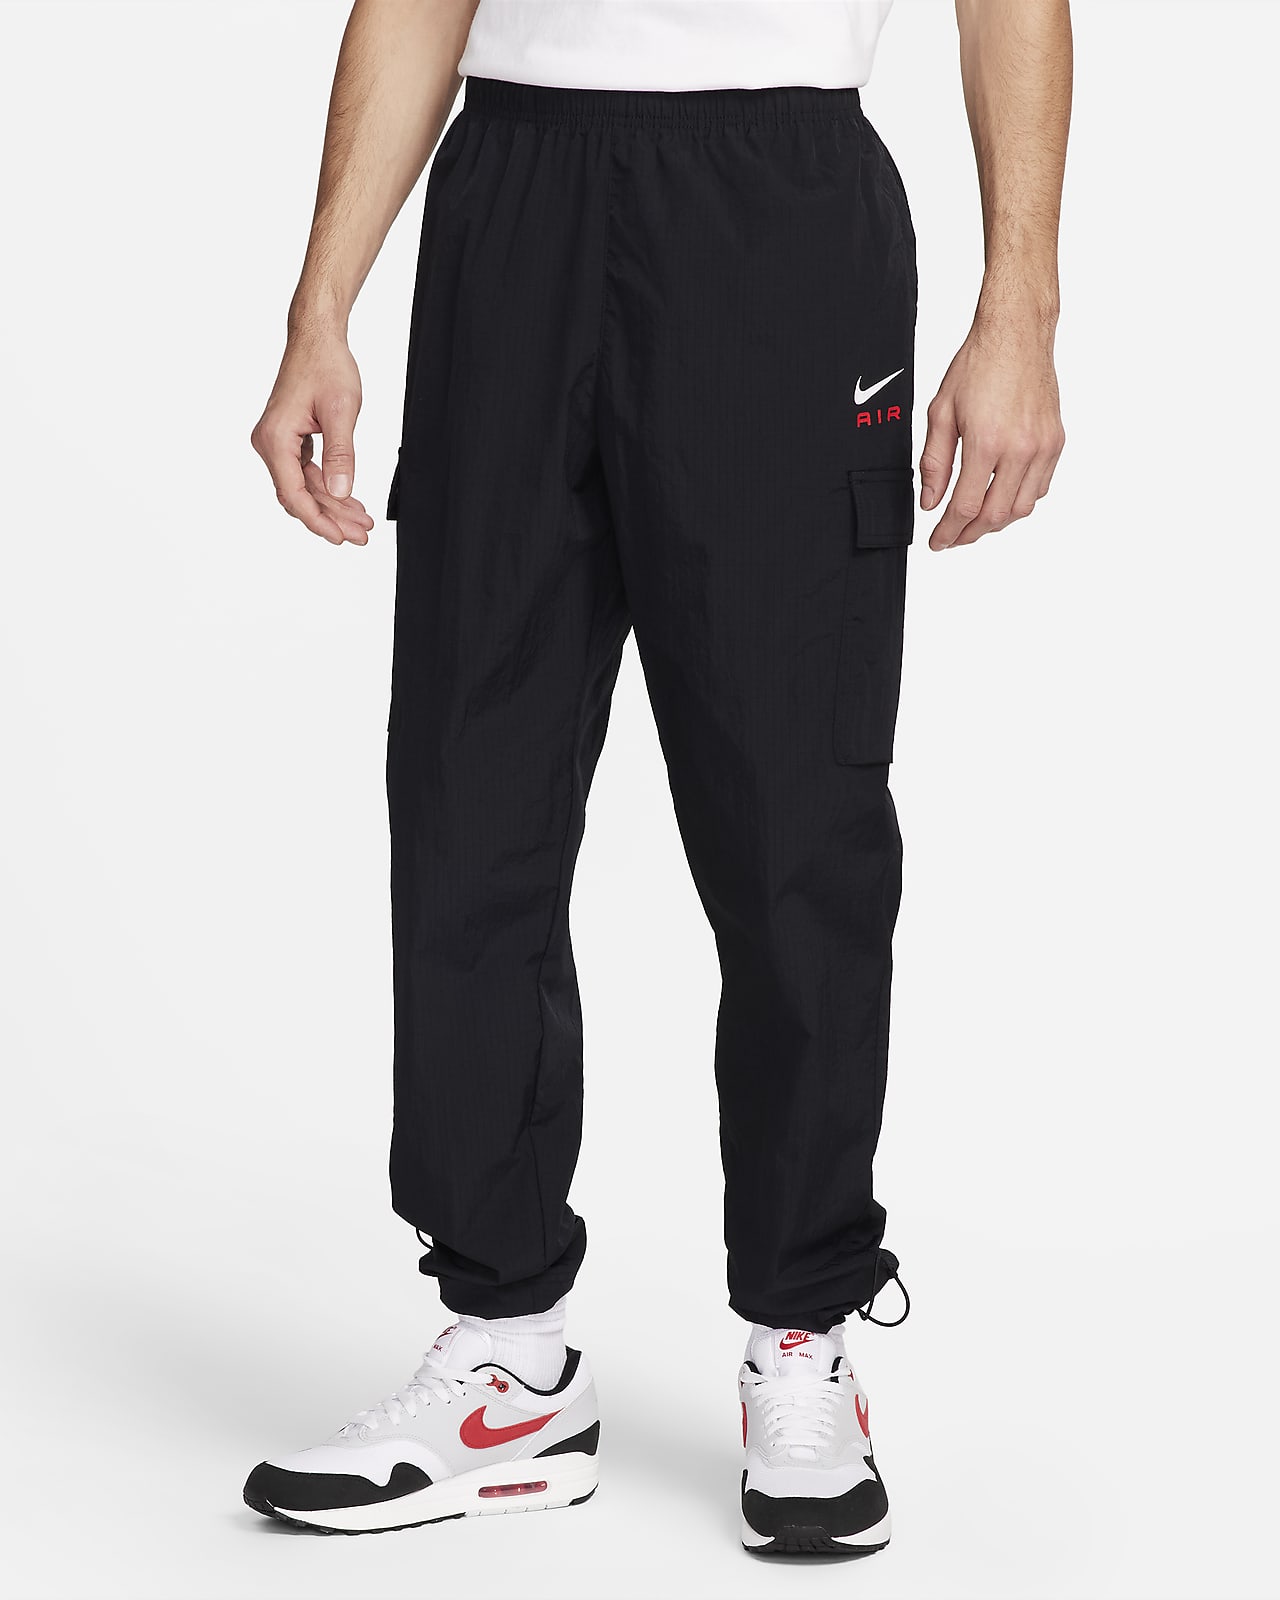 Pantalon tissé léger Nike Air pour homme